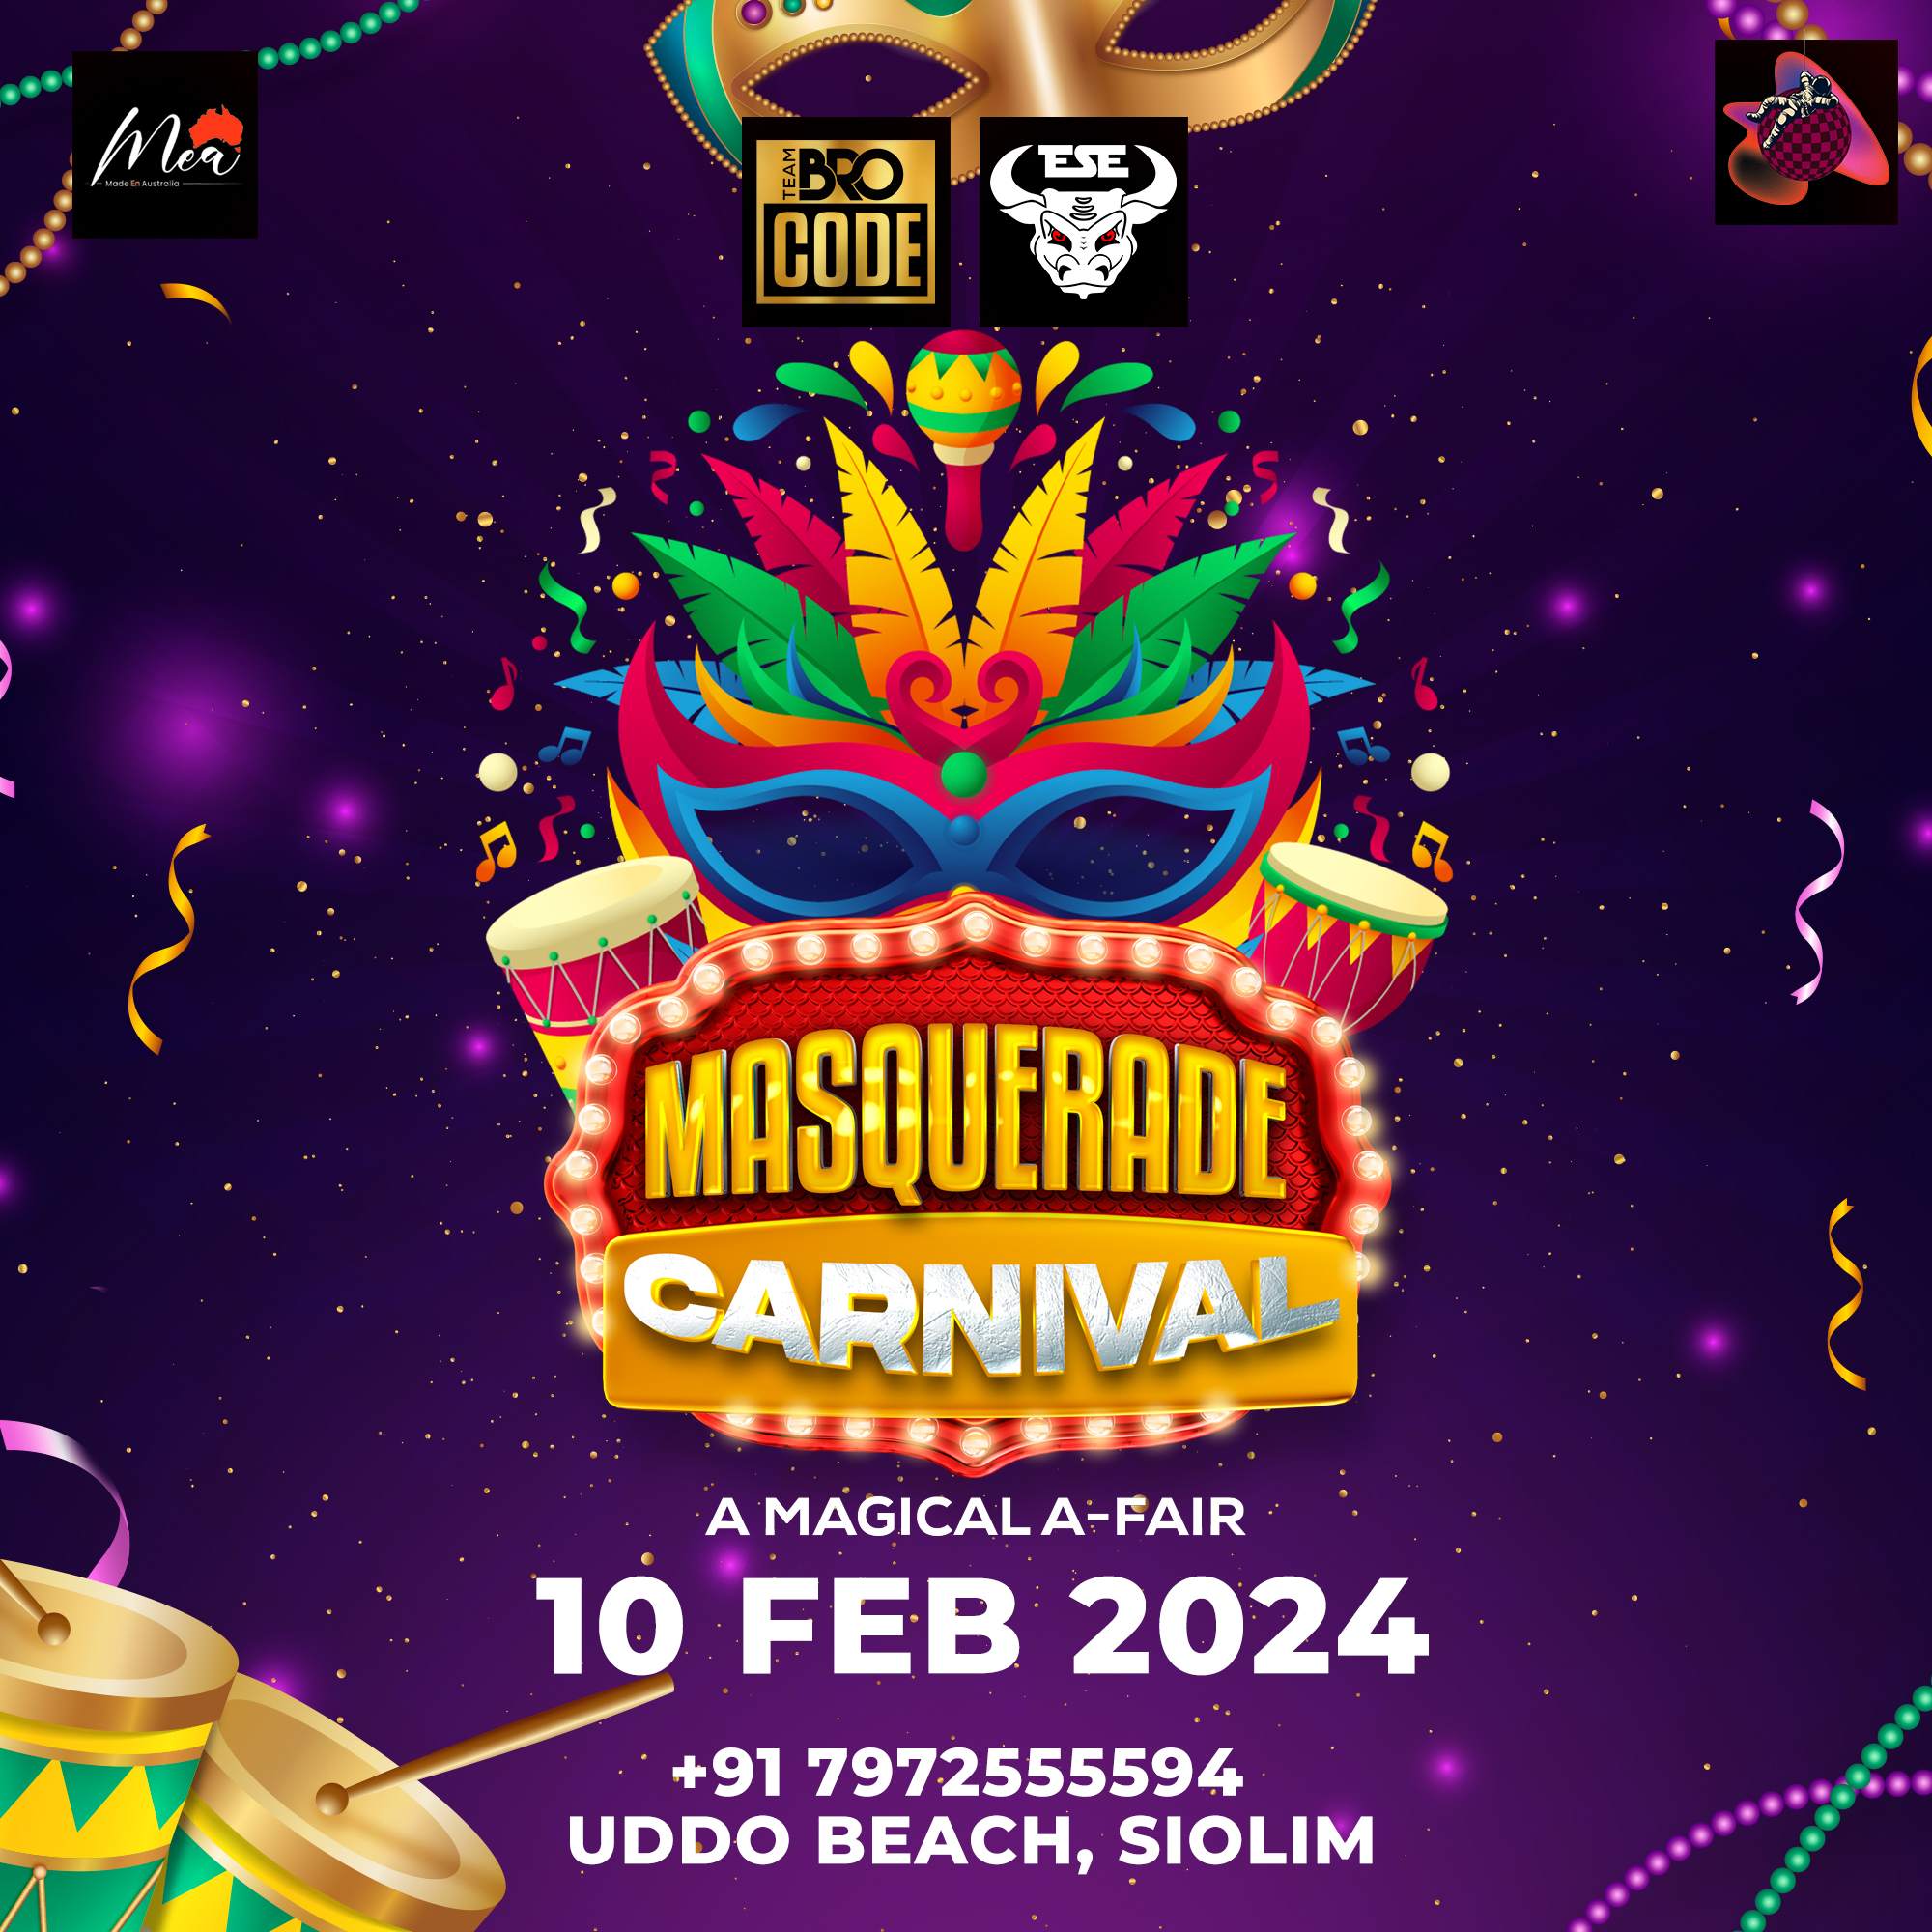 Masquerade Carnival Party Goa - フライヤー表